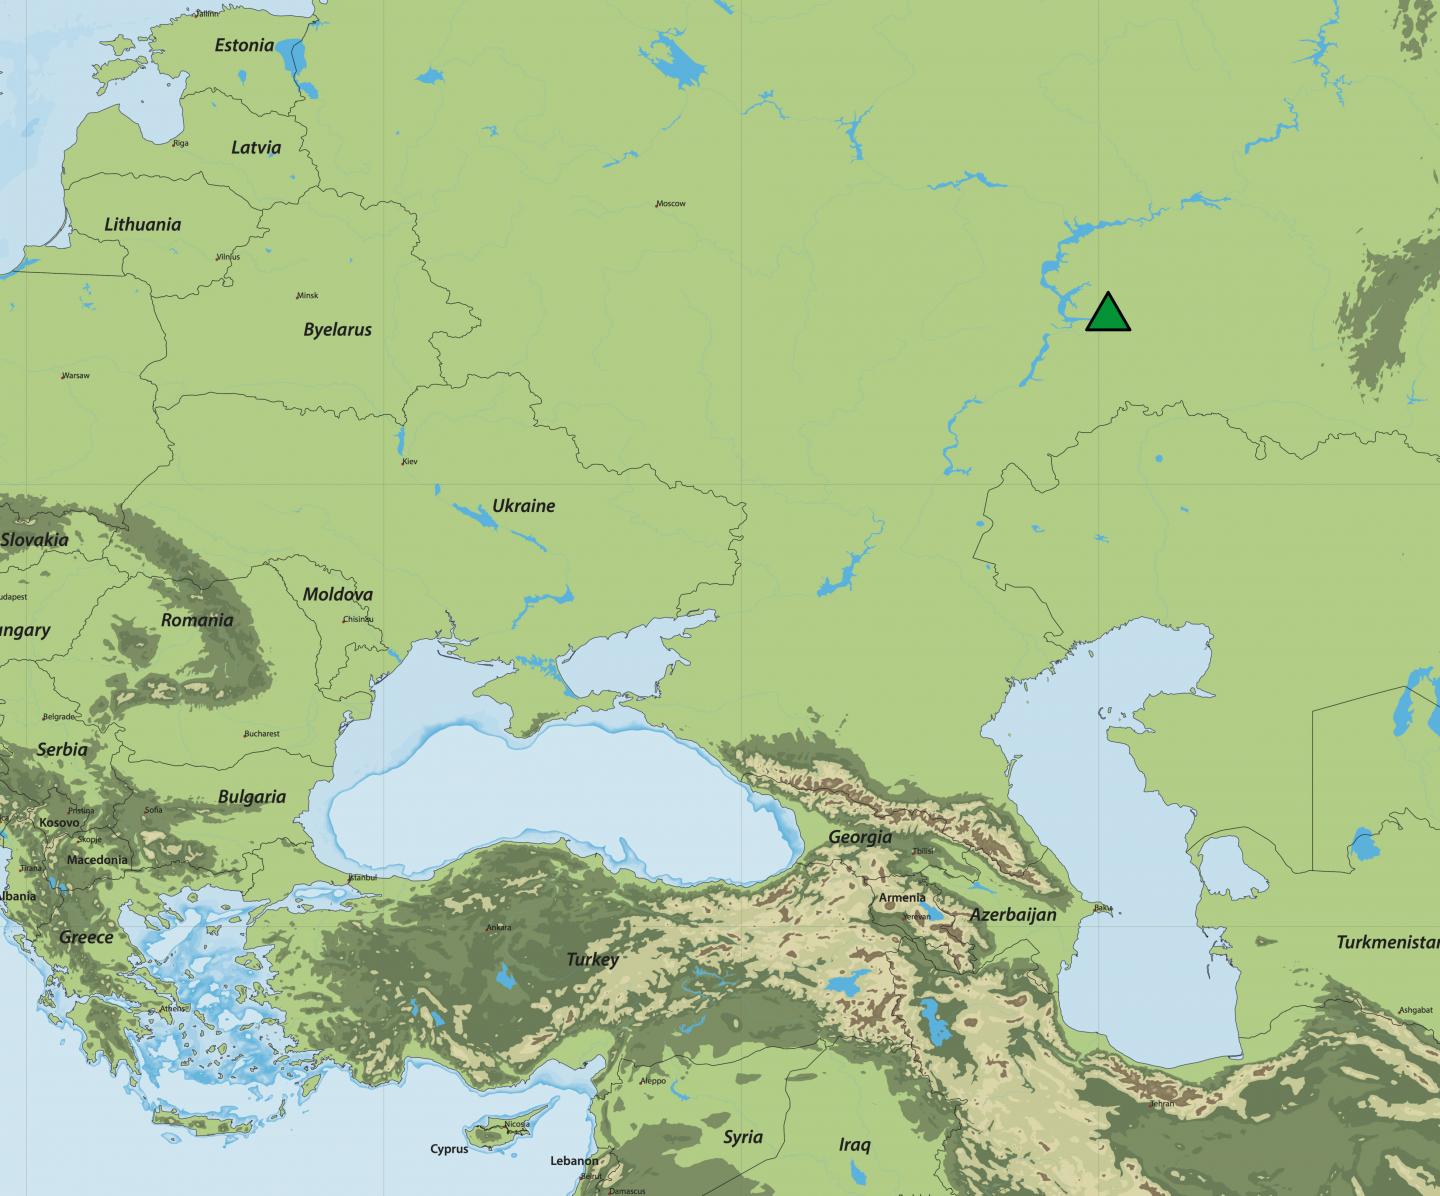 Samara Map